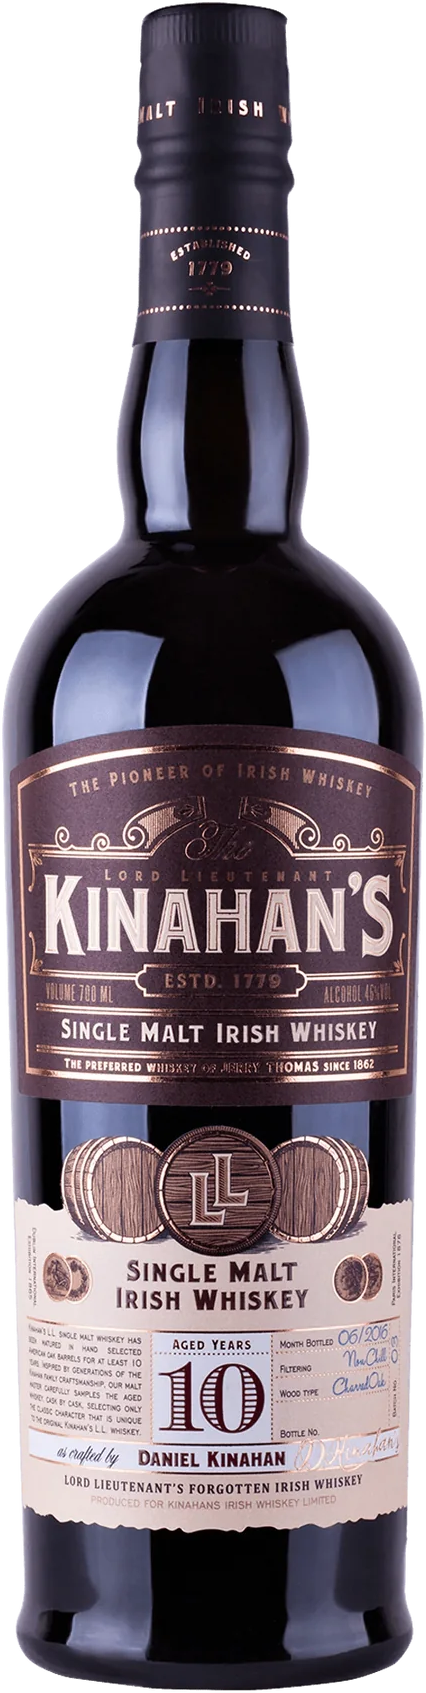 Kinahans 10 Year Old Single Malt Irish Whiskey 700ml